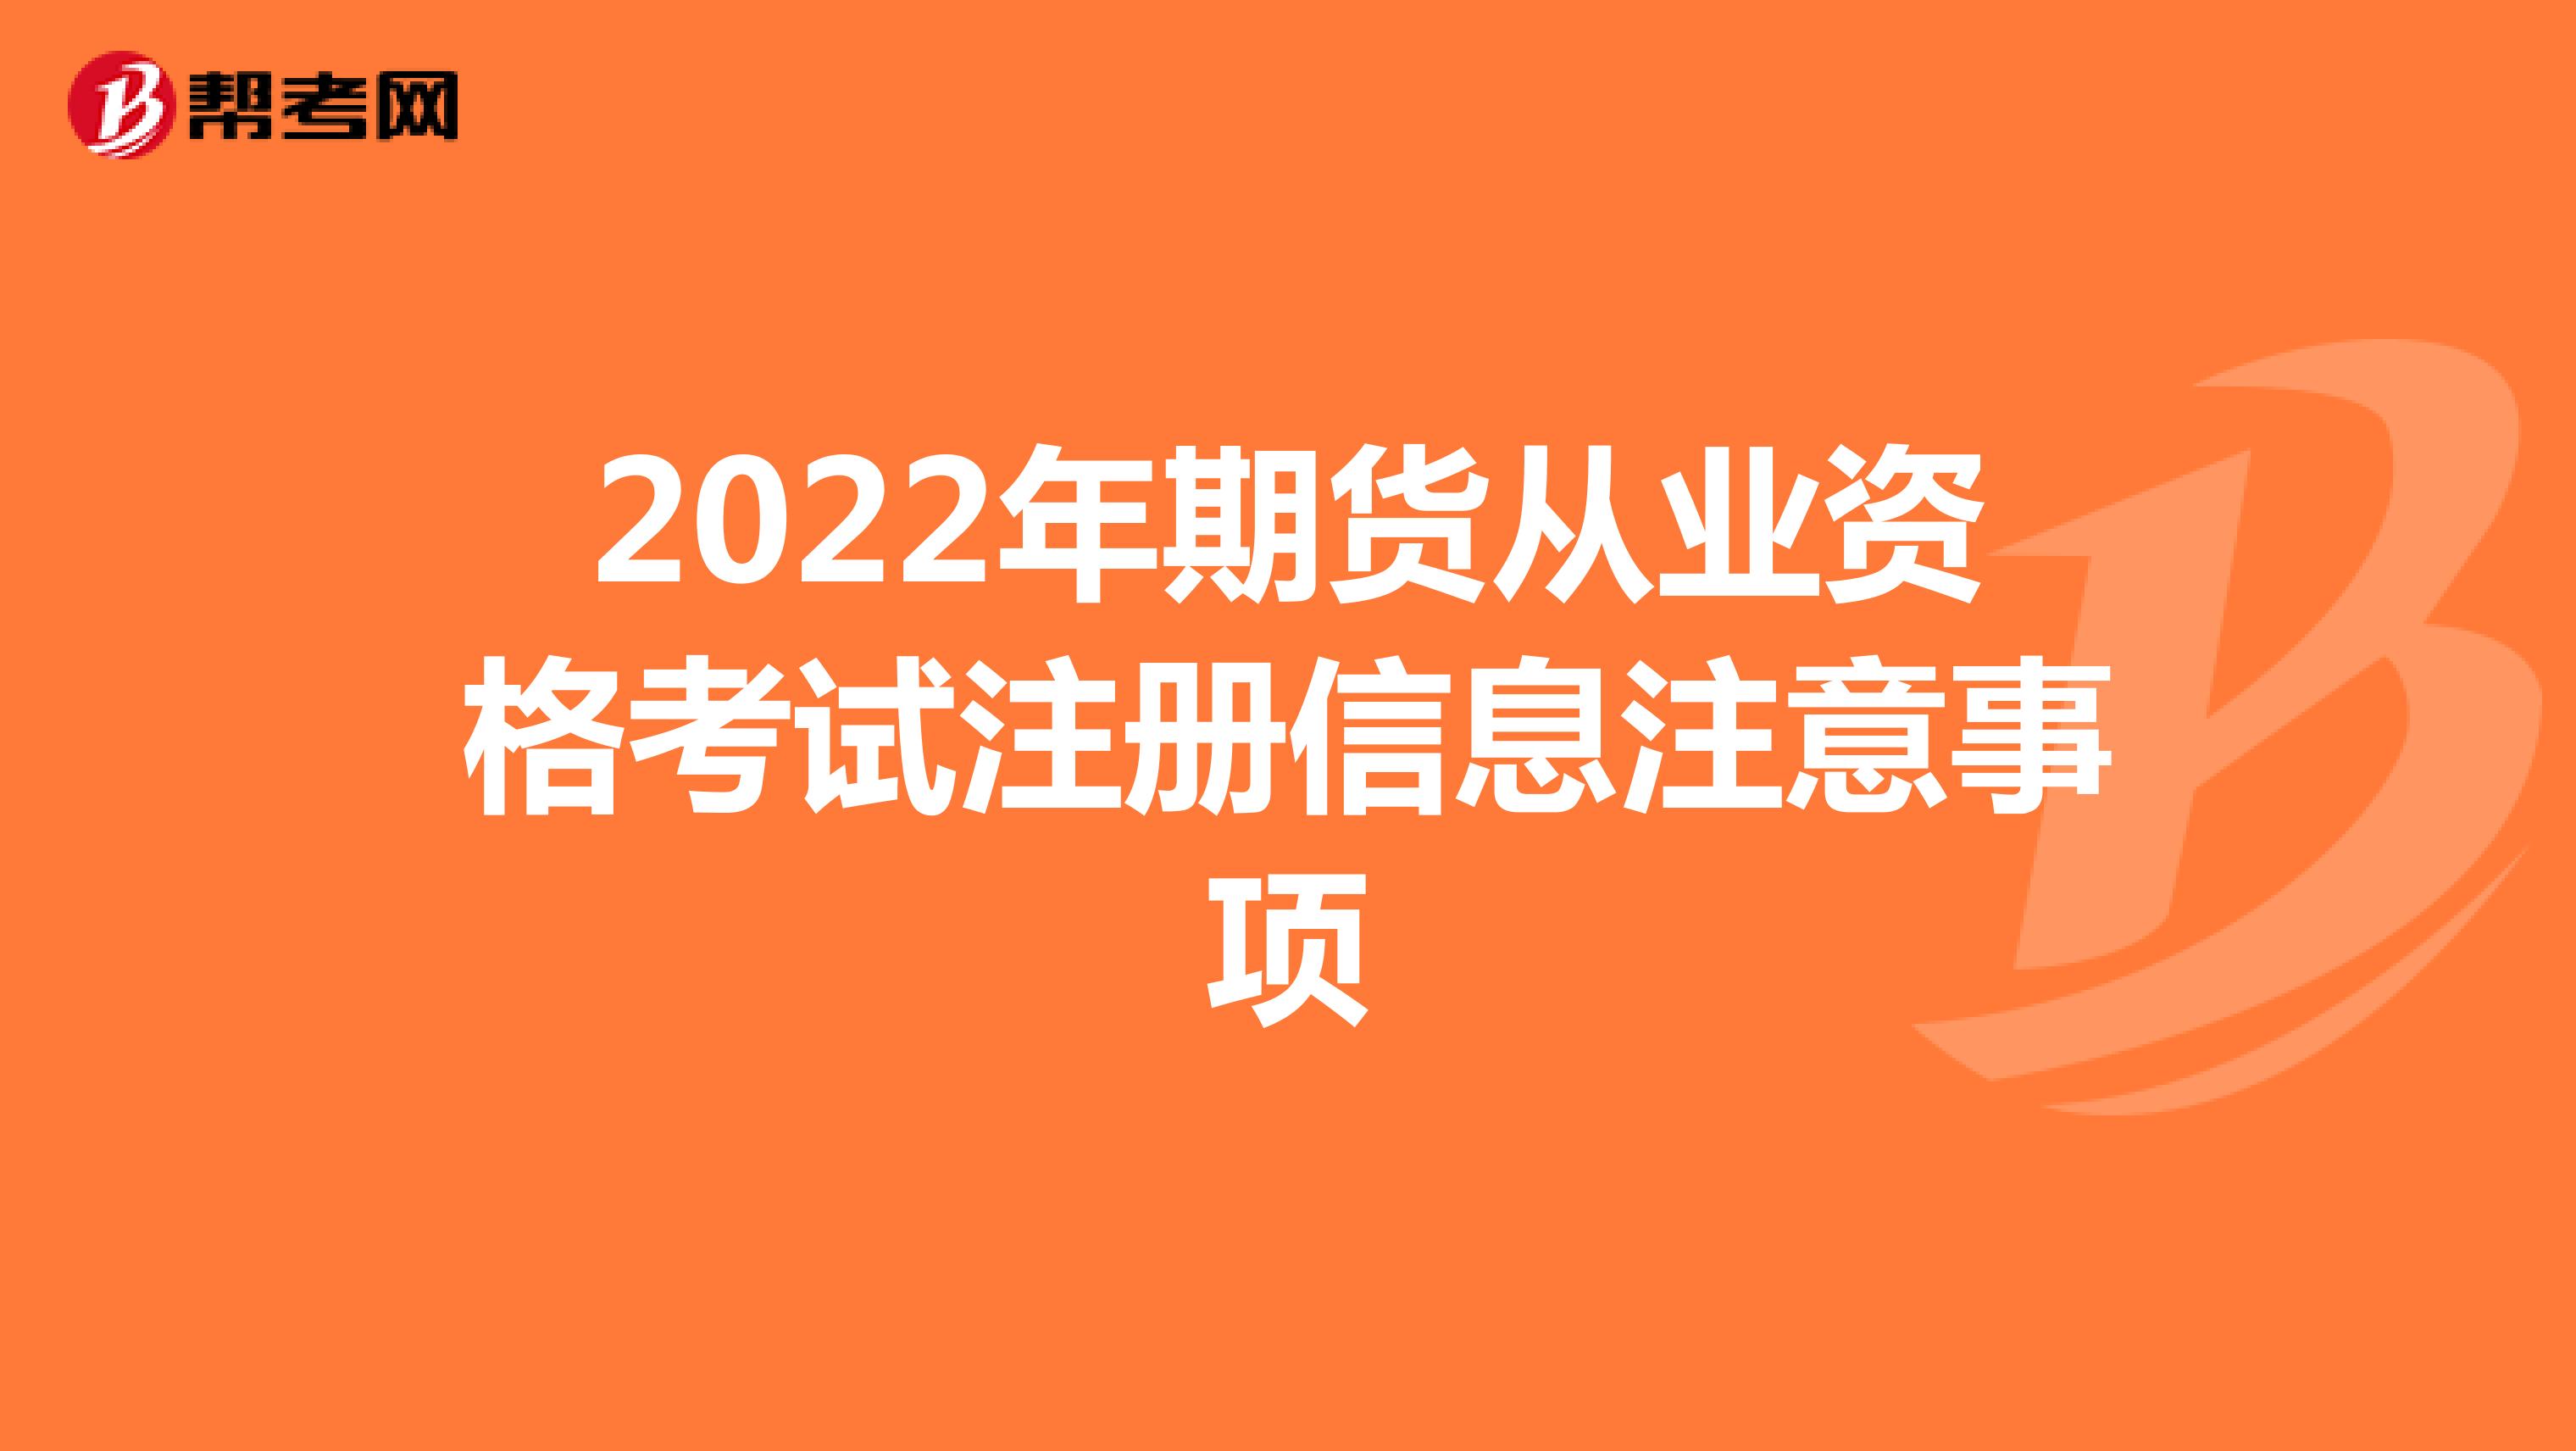 2022年期货从业资格考试注册信息注意事项